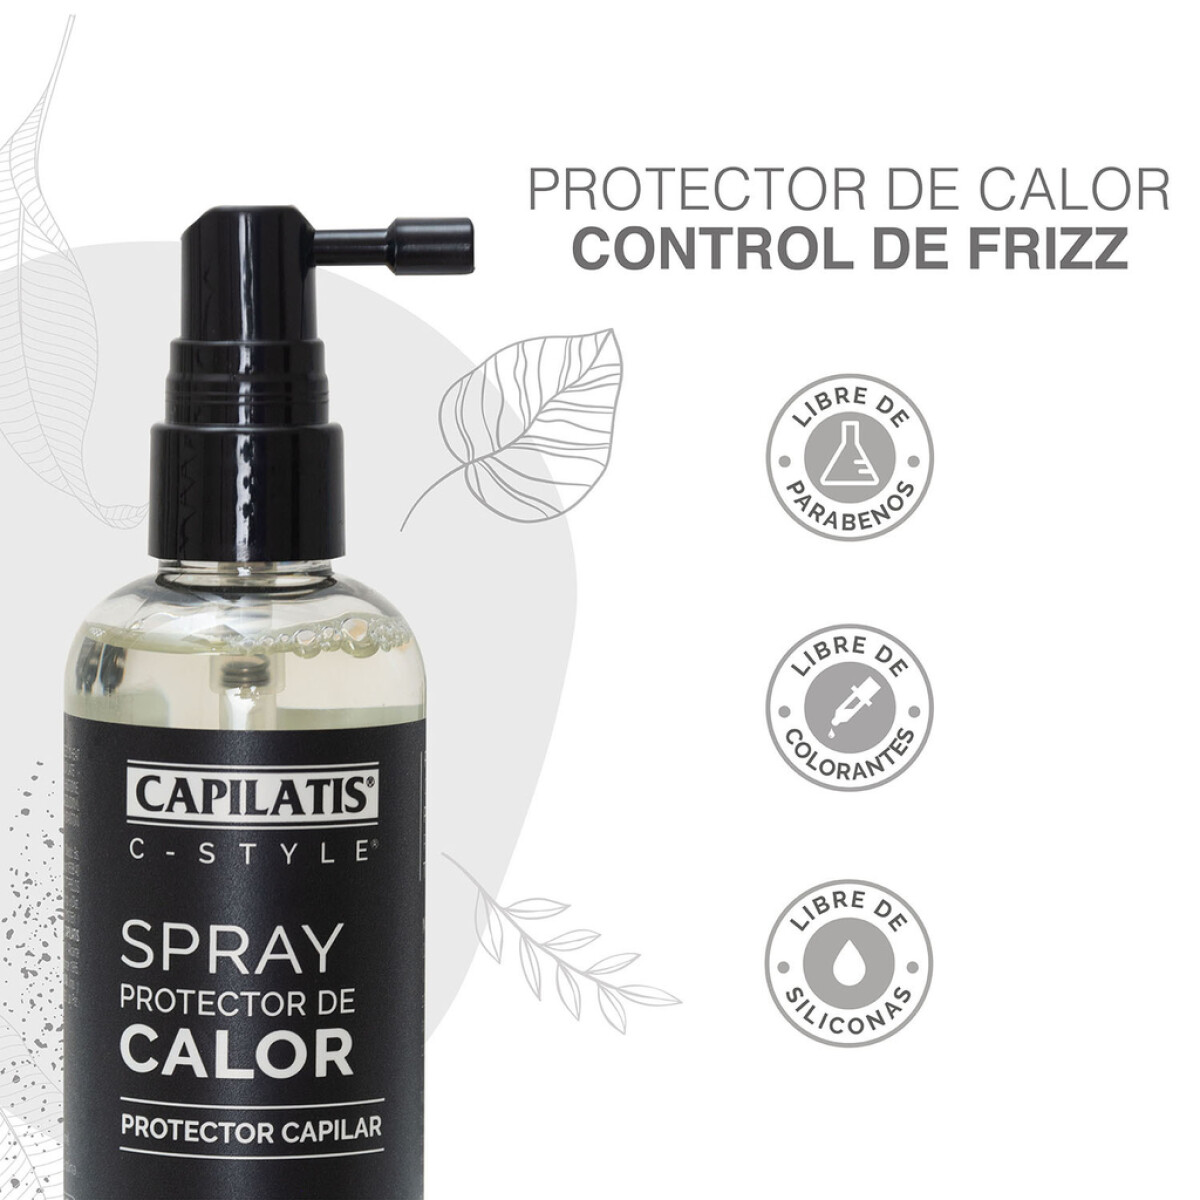 Capilatis spray protector de calor 